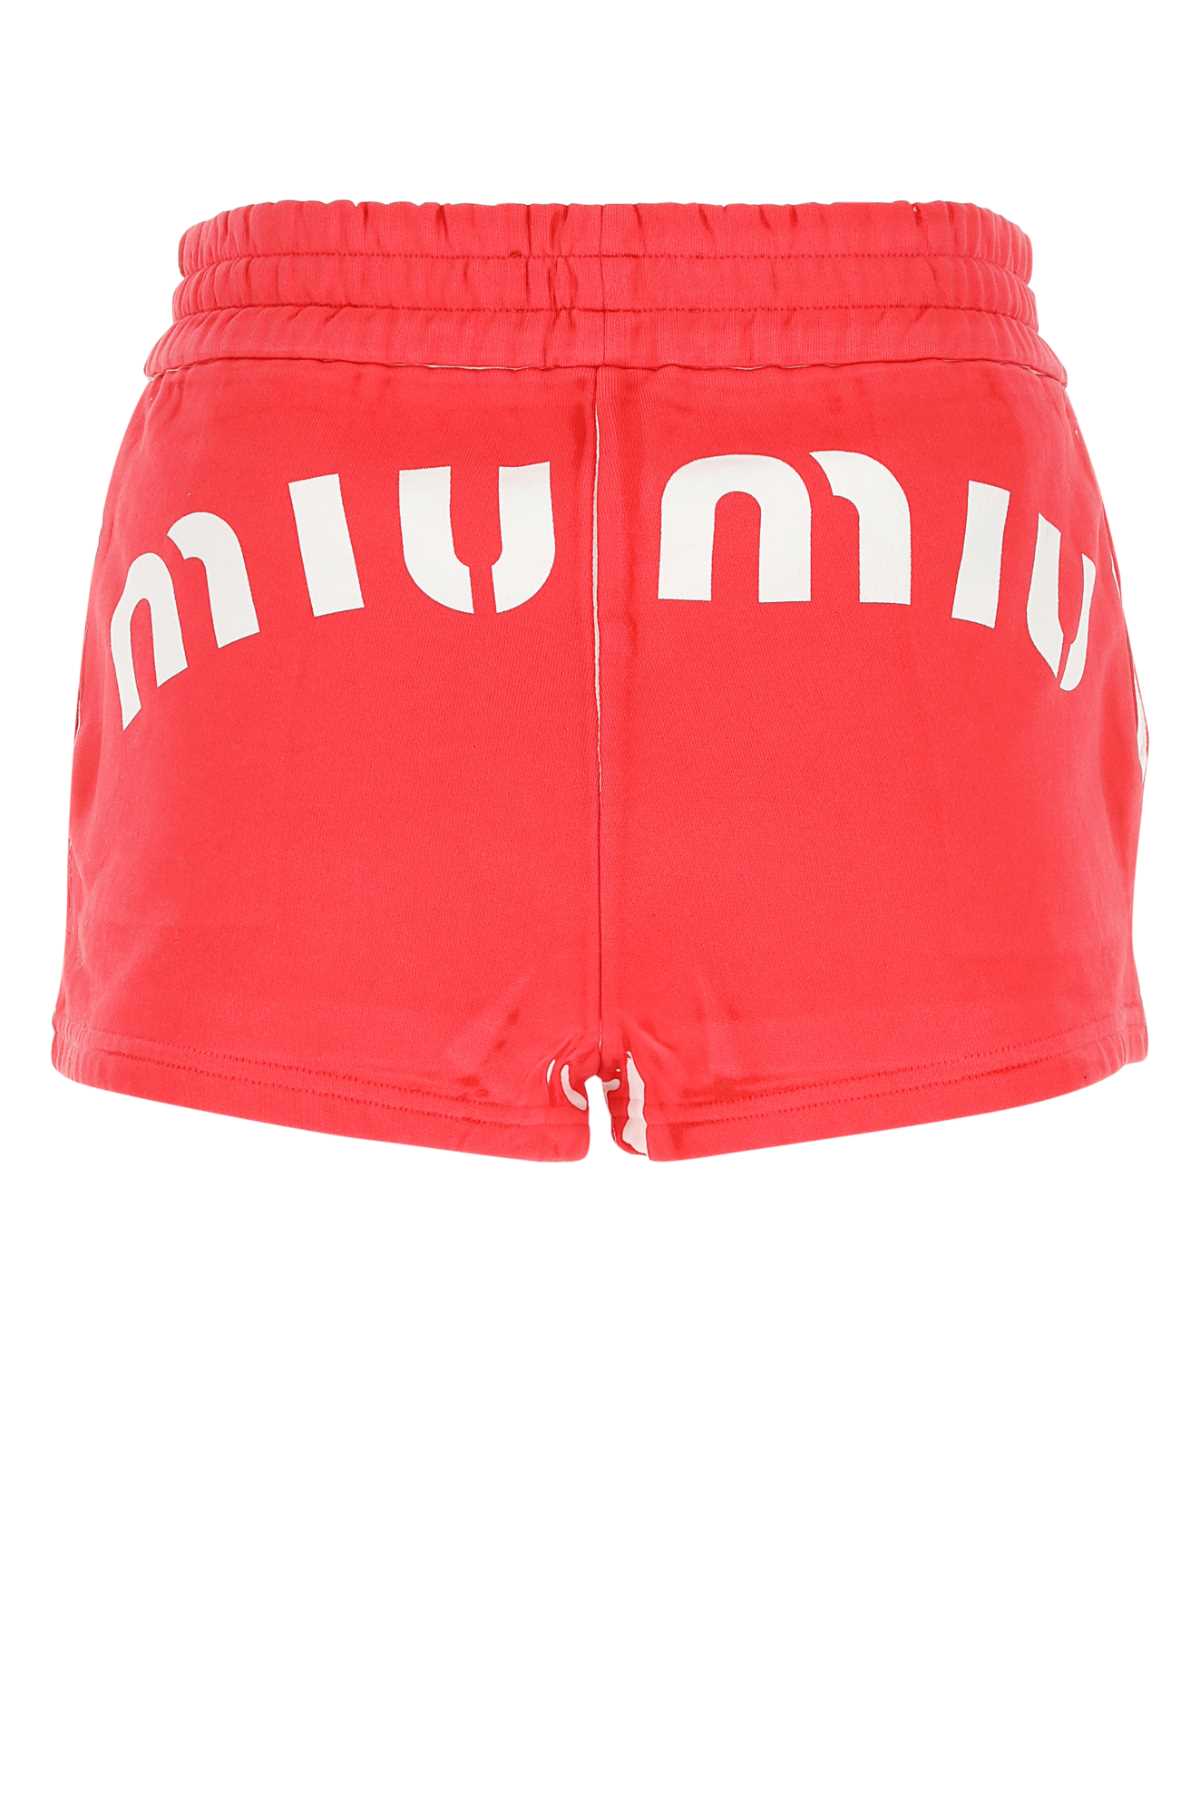 Miu Miu Red Cotton Shorts In Rosso